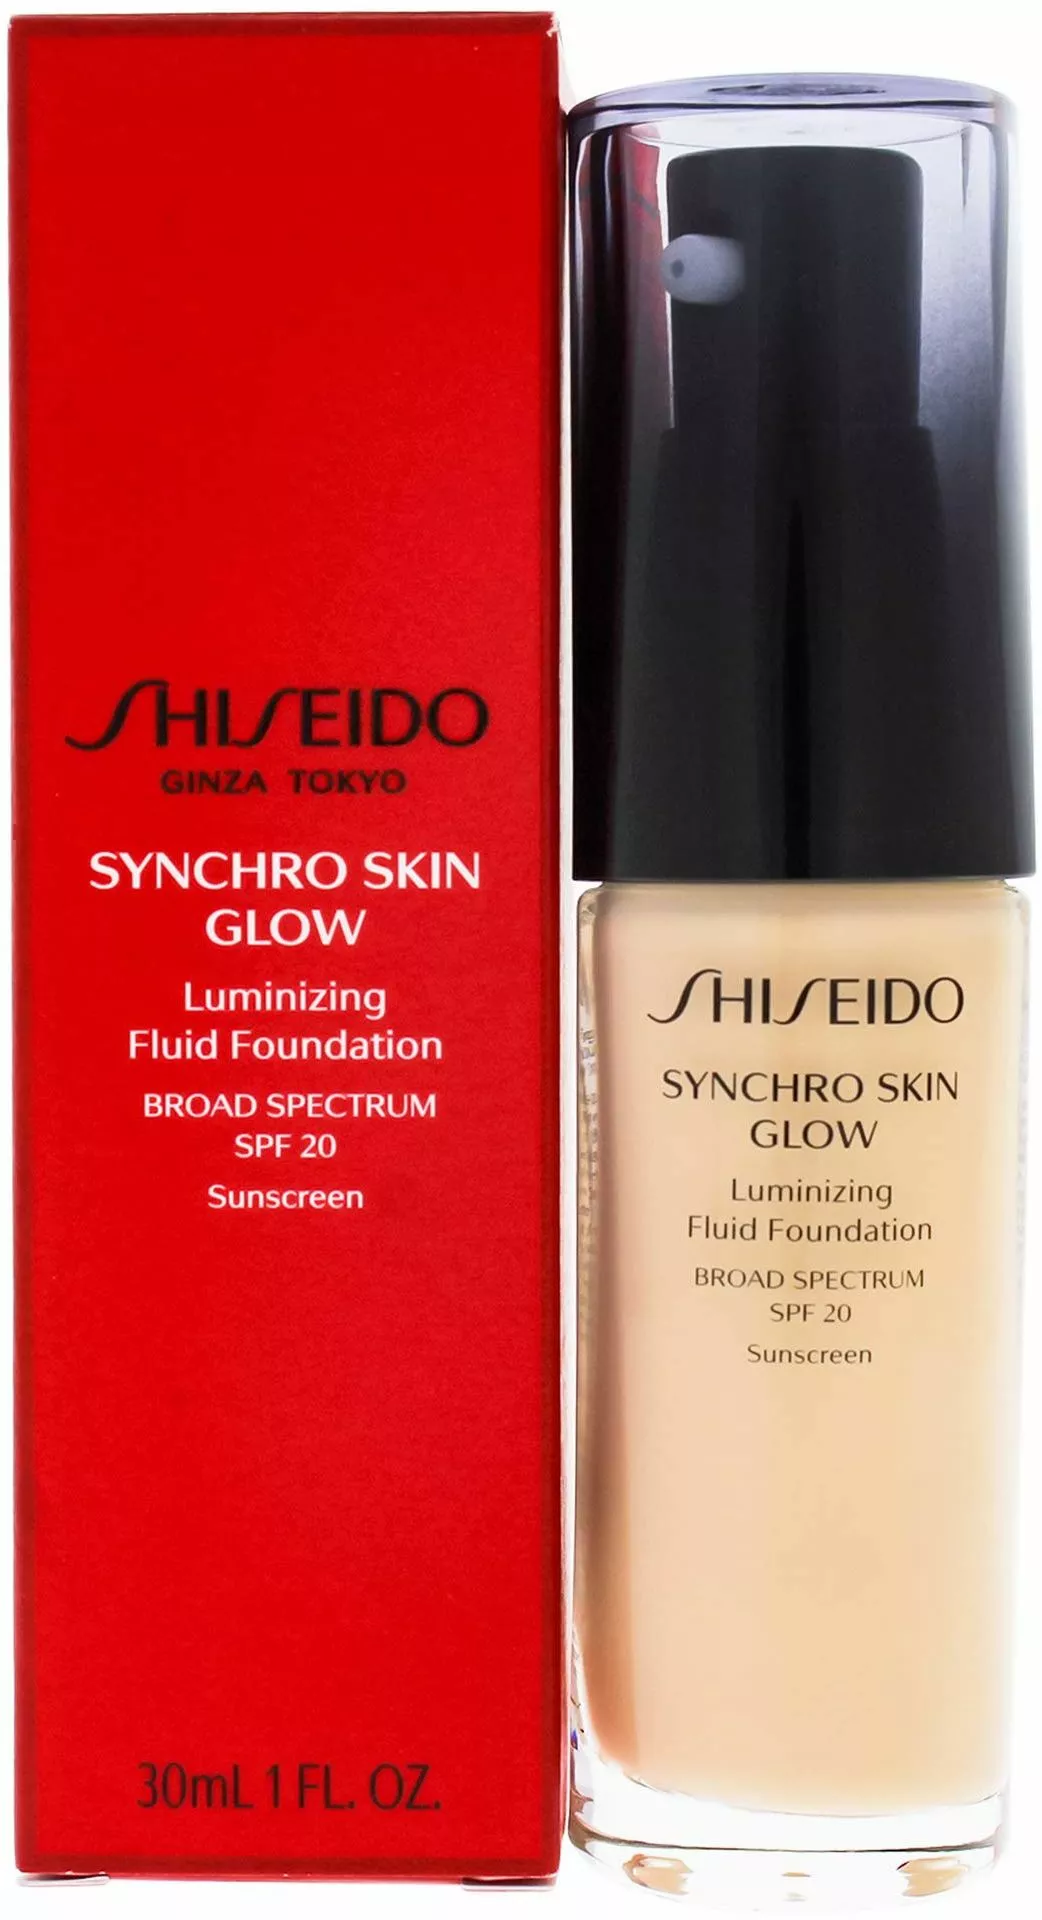 shiseido synchro skin glow luminizing fluid foundation gold